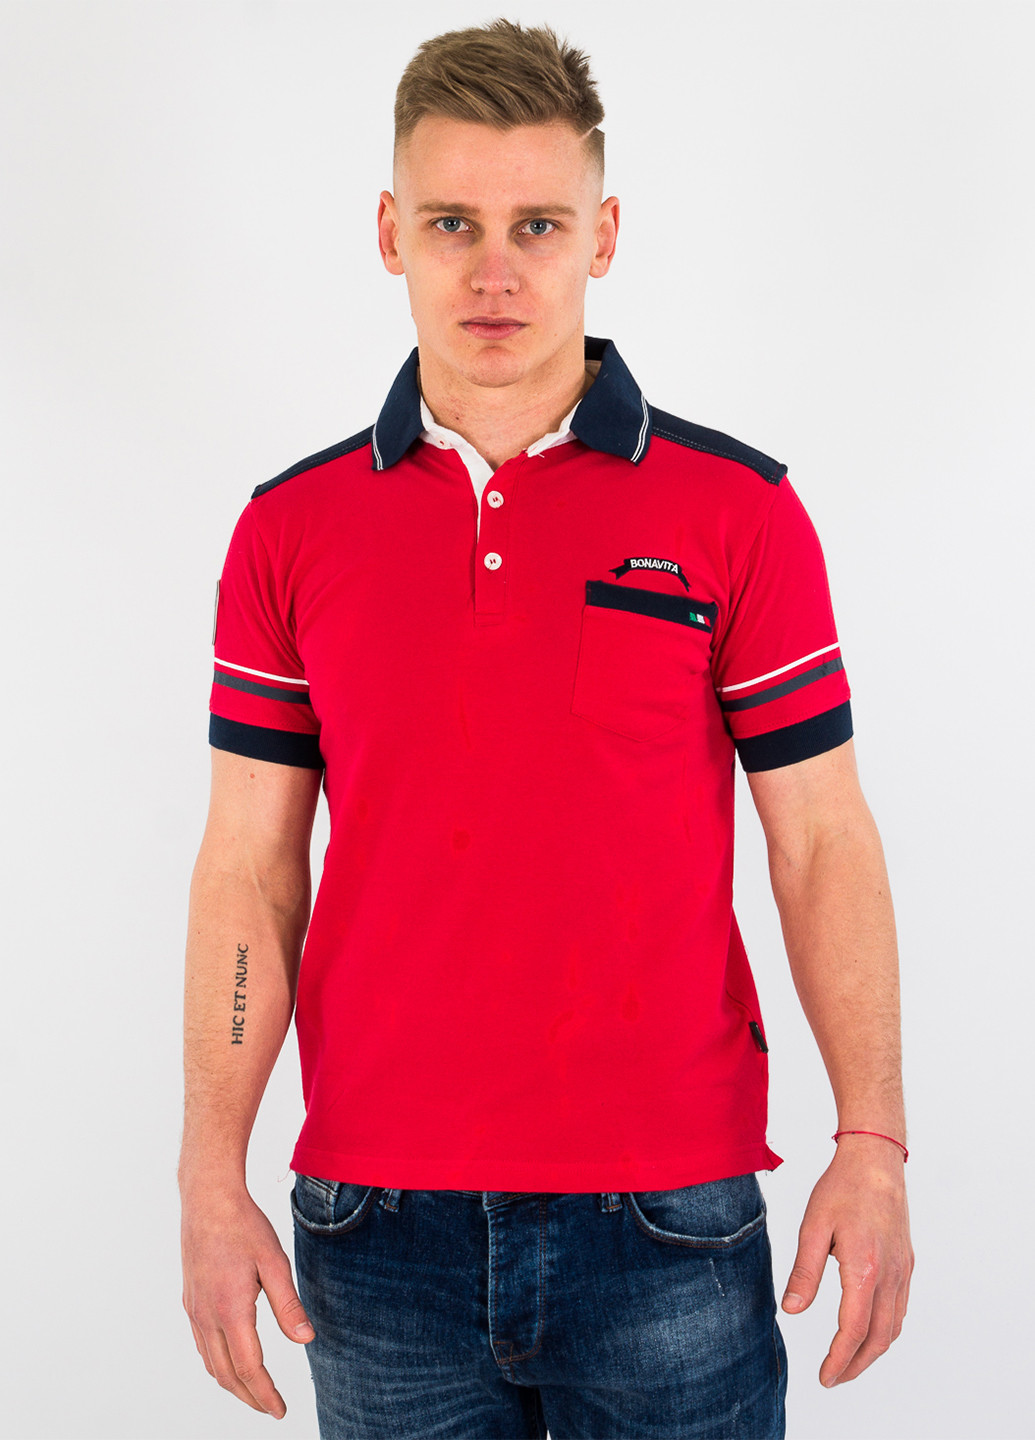 Красная футболка-поло для мужчин Bonavita с надписью